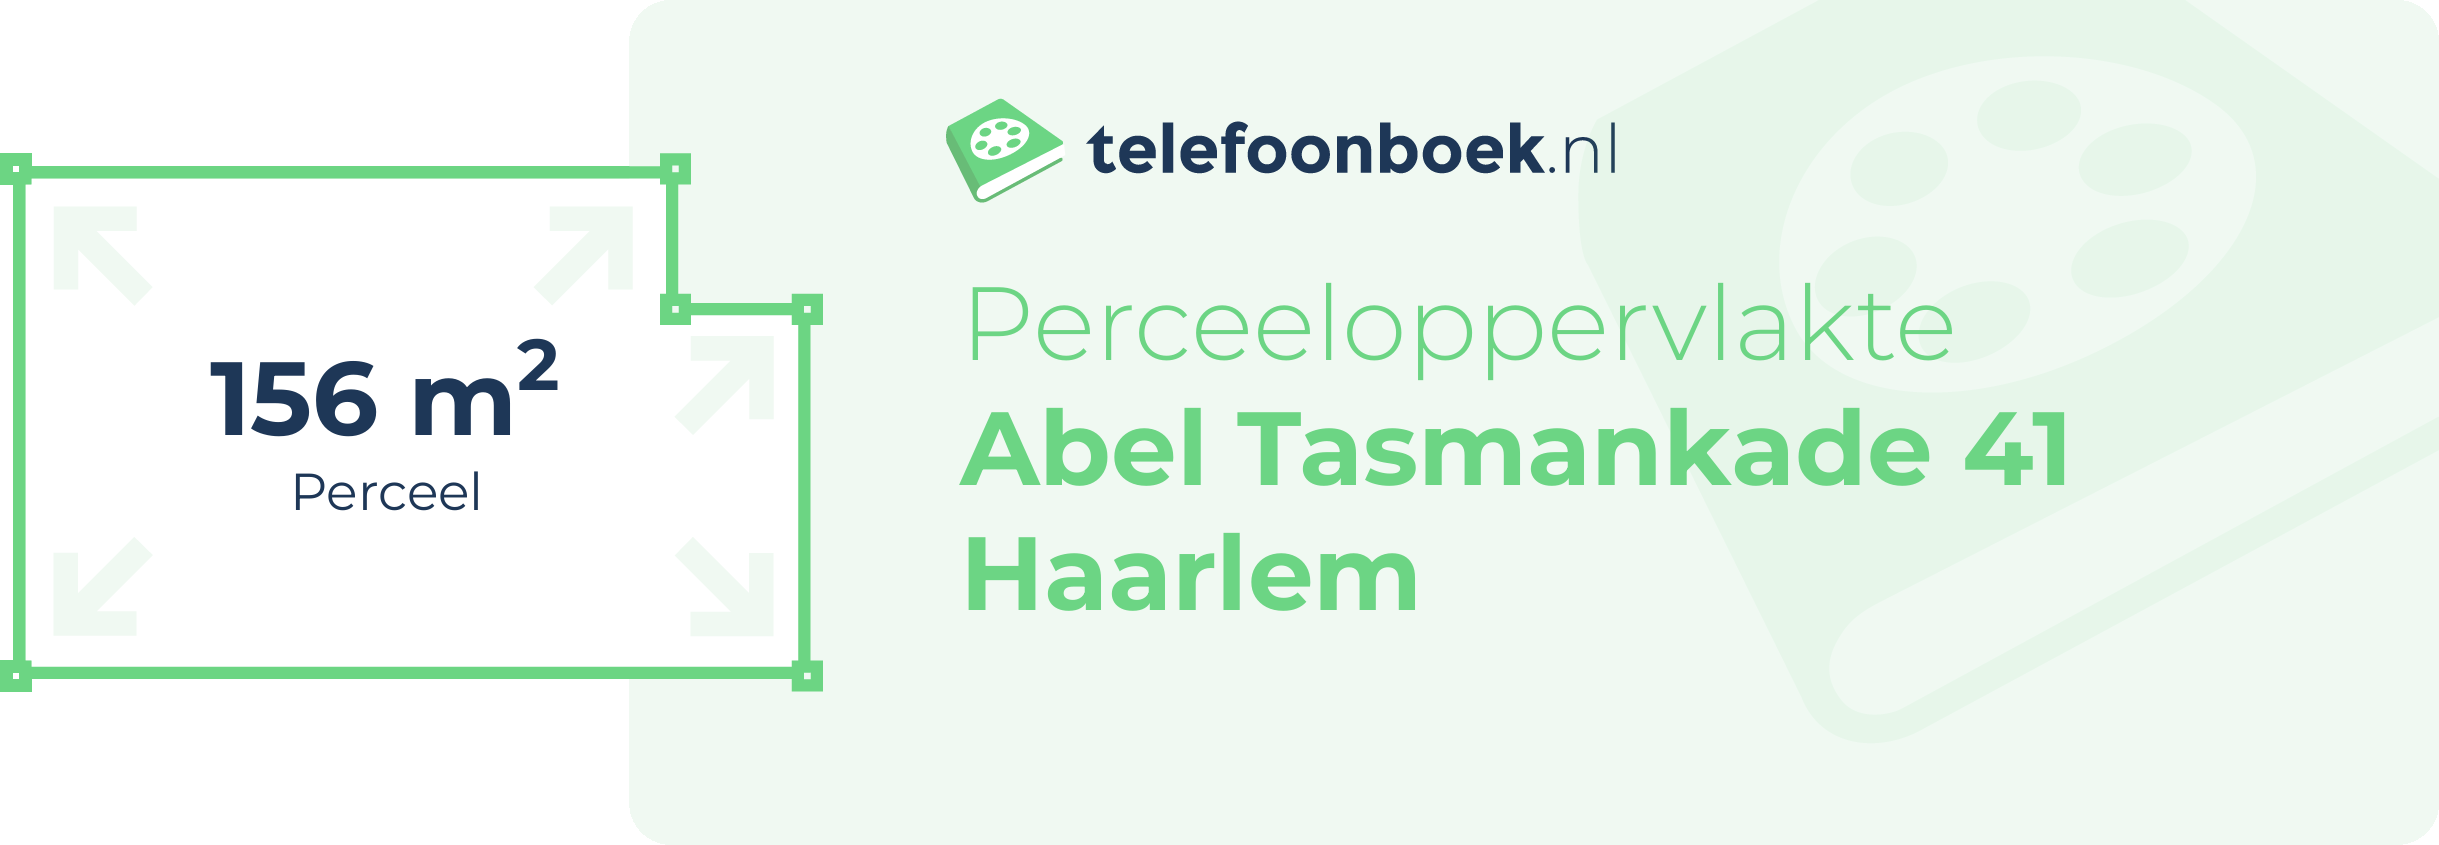 Perceeloppervlakte Abel Tasmankade 41 Haarlem